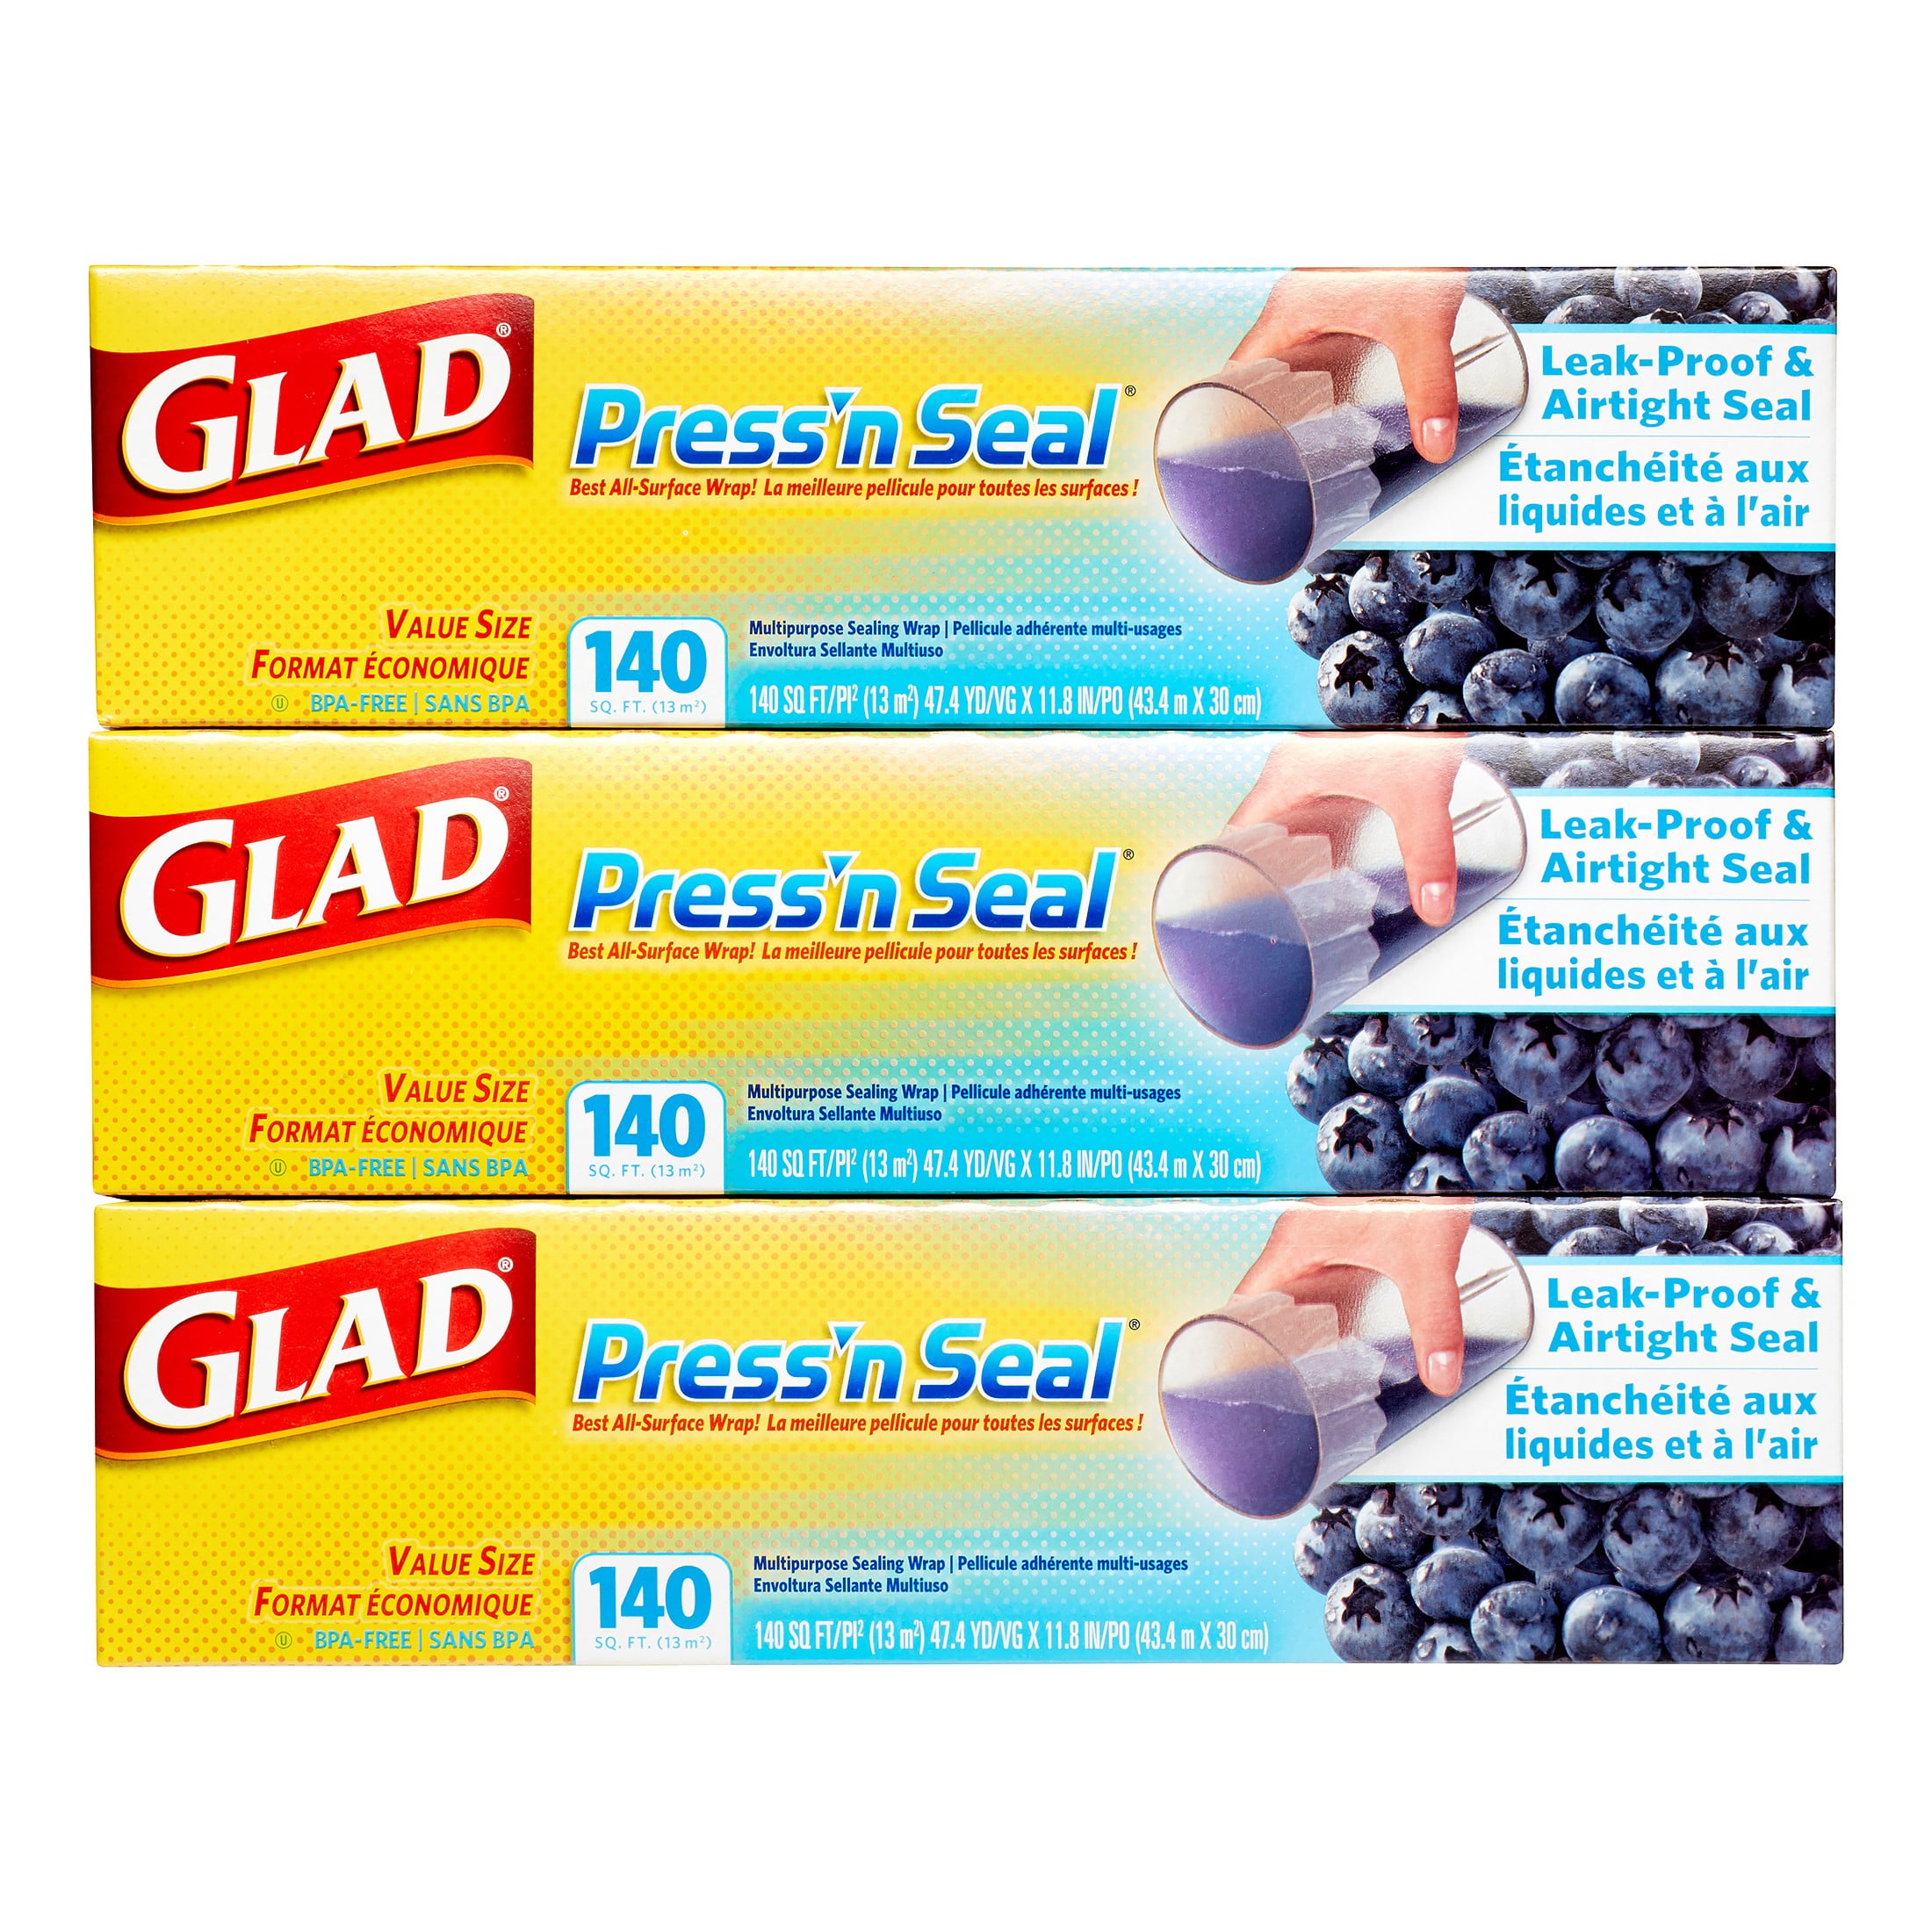 Glad Press'n Seal Food Wrap, 140 sq ft-2 Pack, 1 - Harris Teeter